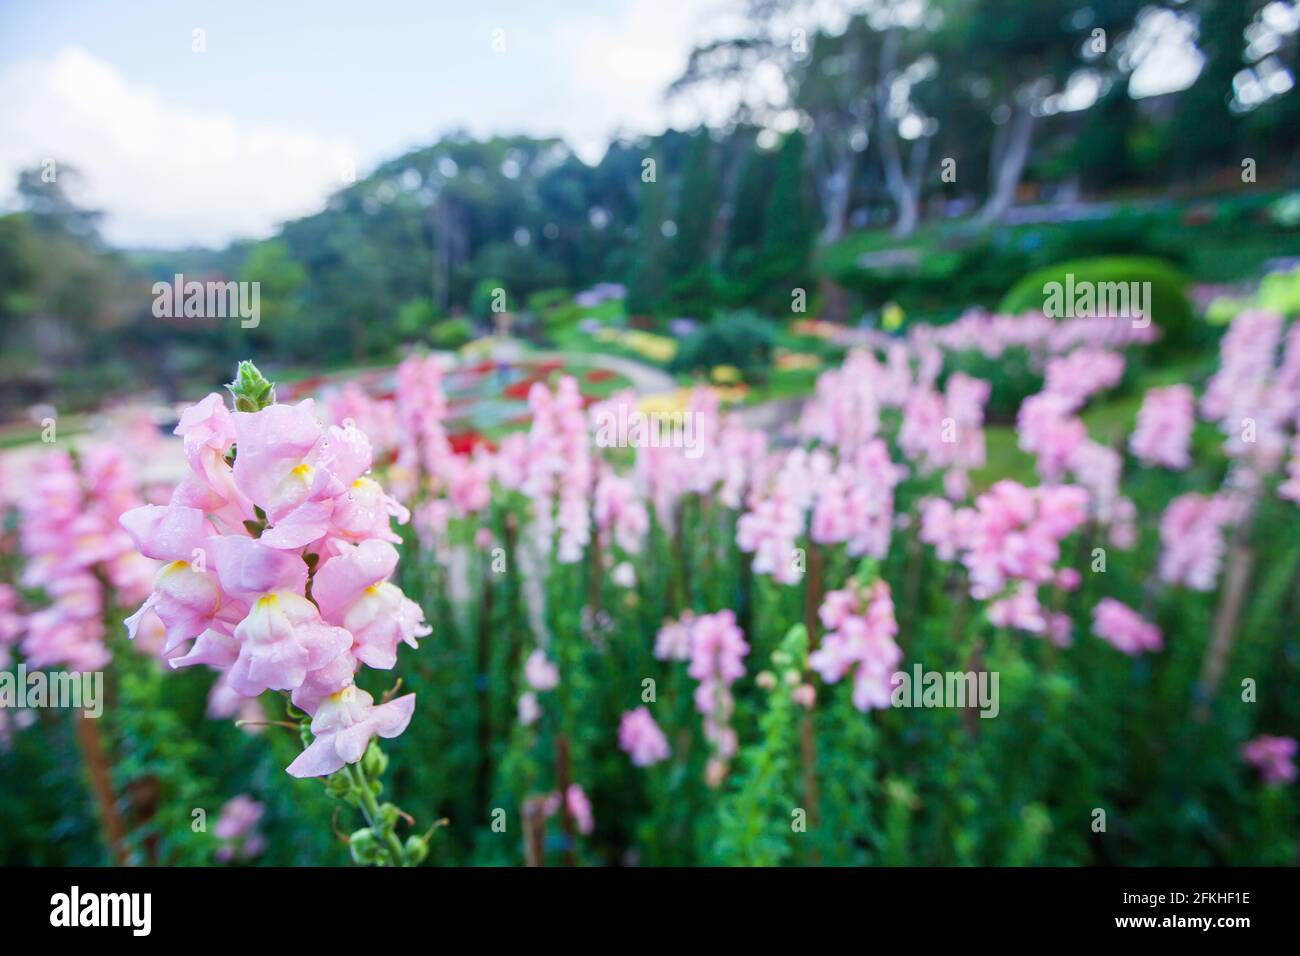 Blühende rosa Blumen mit Morgentau im tropischen botanischen Garten auf den Bergterrassen, Blumengarten im Hintergrund. Doi Tung, Thailand. Stockfoto